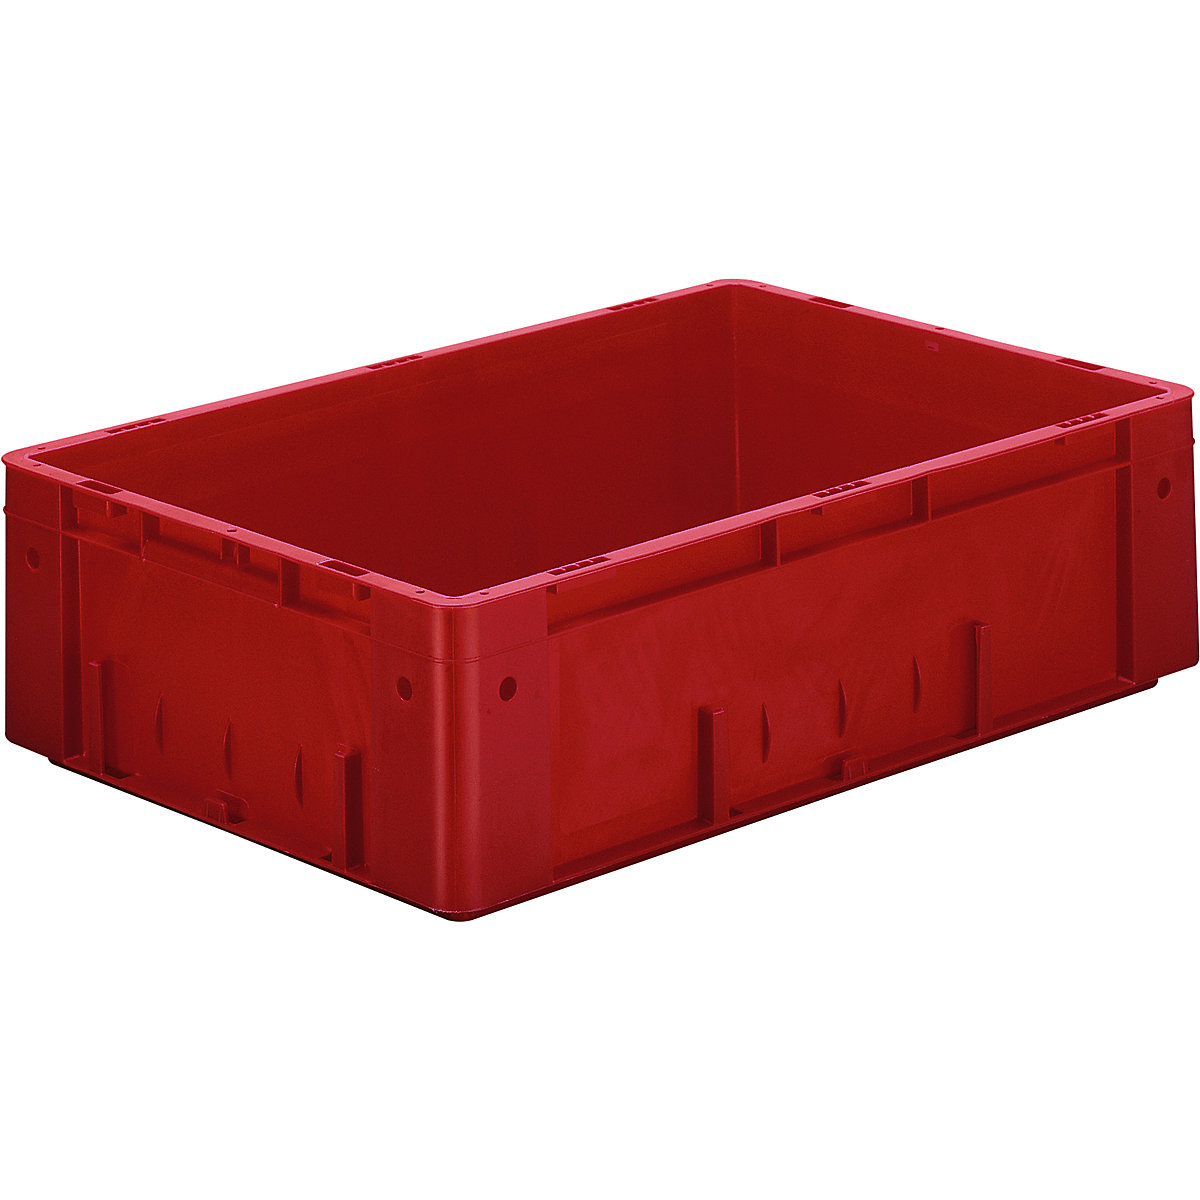 Euro-prepravka na ťažký náklad, polypropylén, objem 31 l, d x š x v 600 x 400 x 175 mm, steny uzatvorené, dno uzatvorené, červená, OJ 2 ks-4